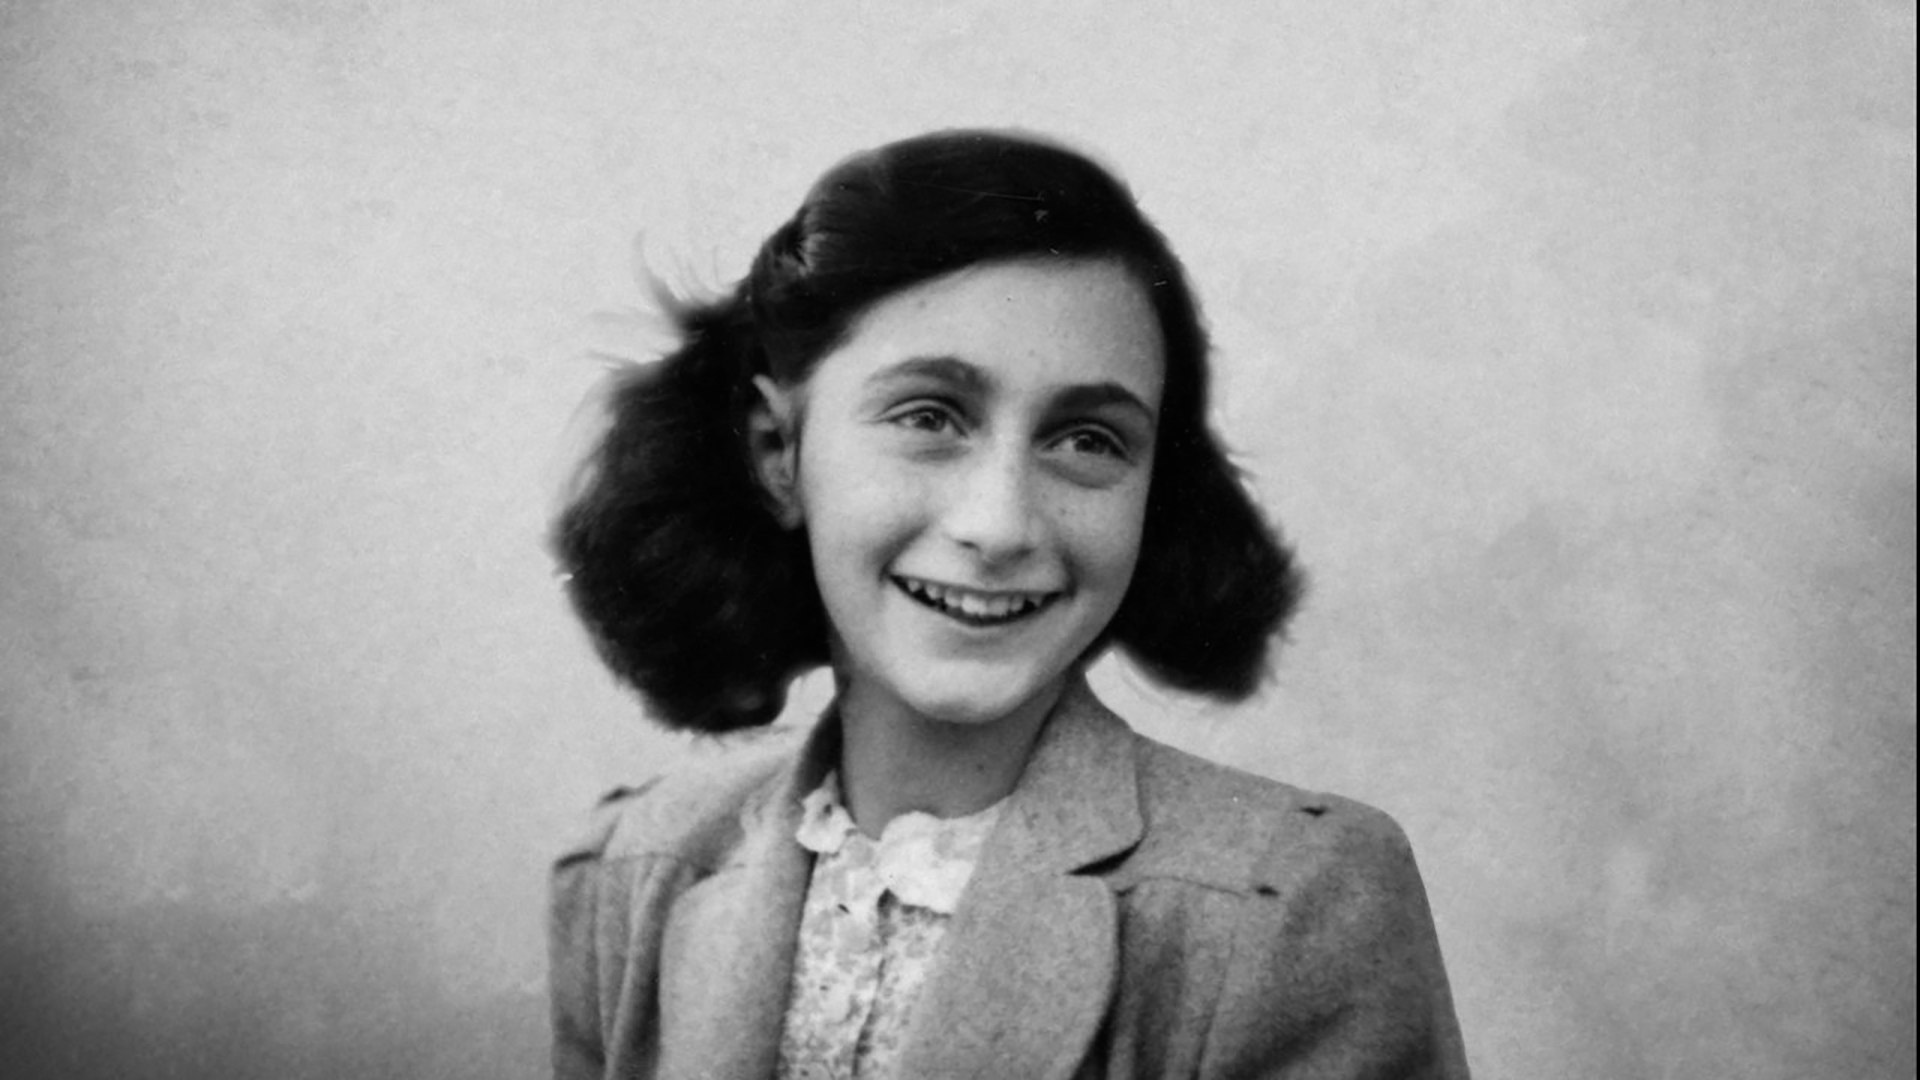 "Cuando acabe la guerra quisiera publicar un libro titulado ‘La casa de atrás’; aún está por ver si resulta, pero mi diario podrá servir de base", escribió la adolescente Ana Frank en su diario (Anne Frank house)